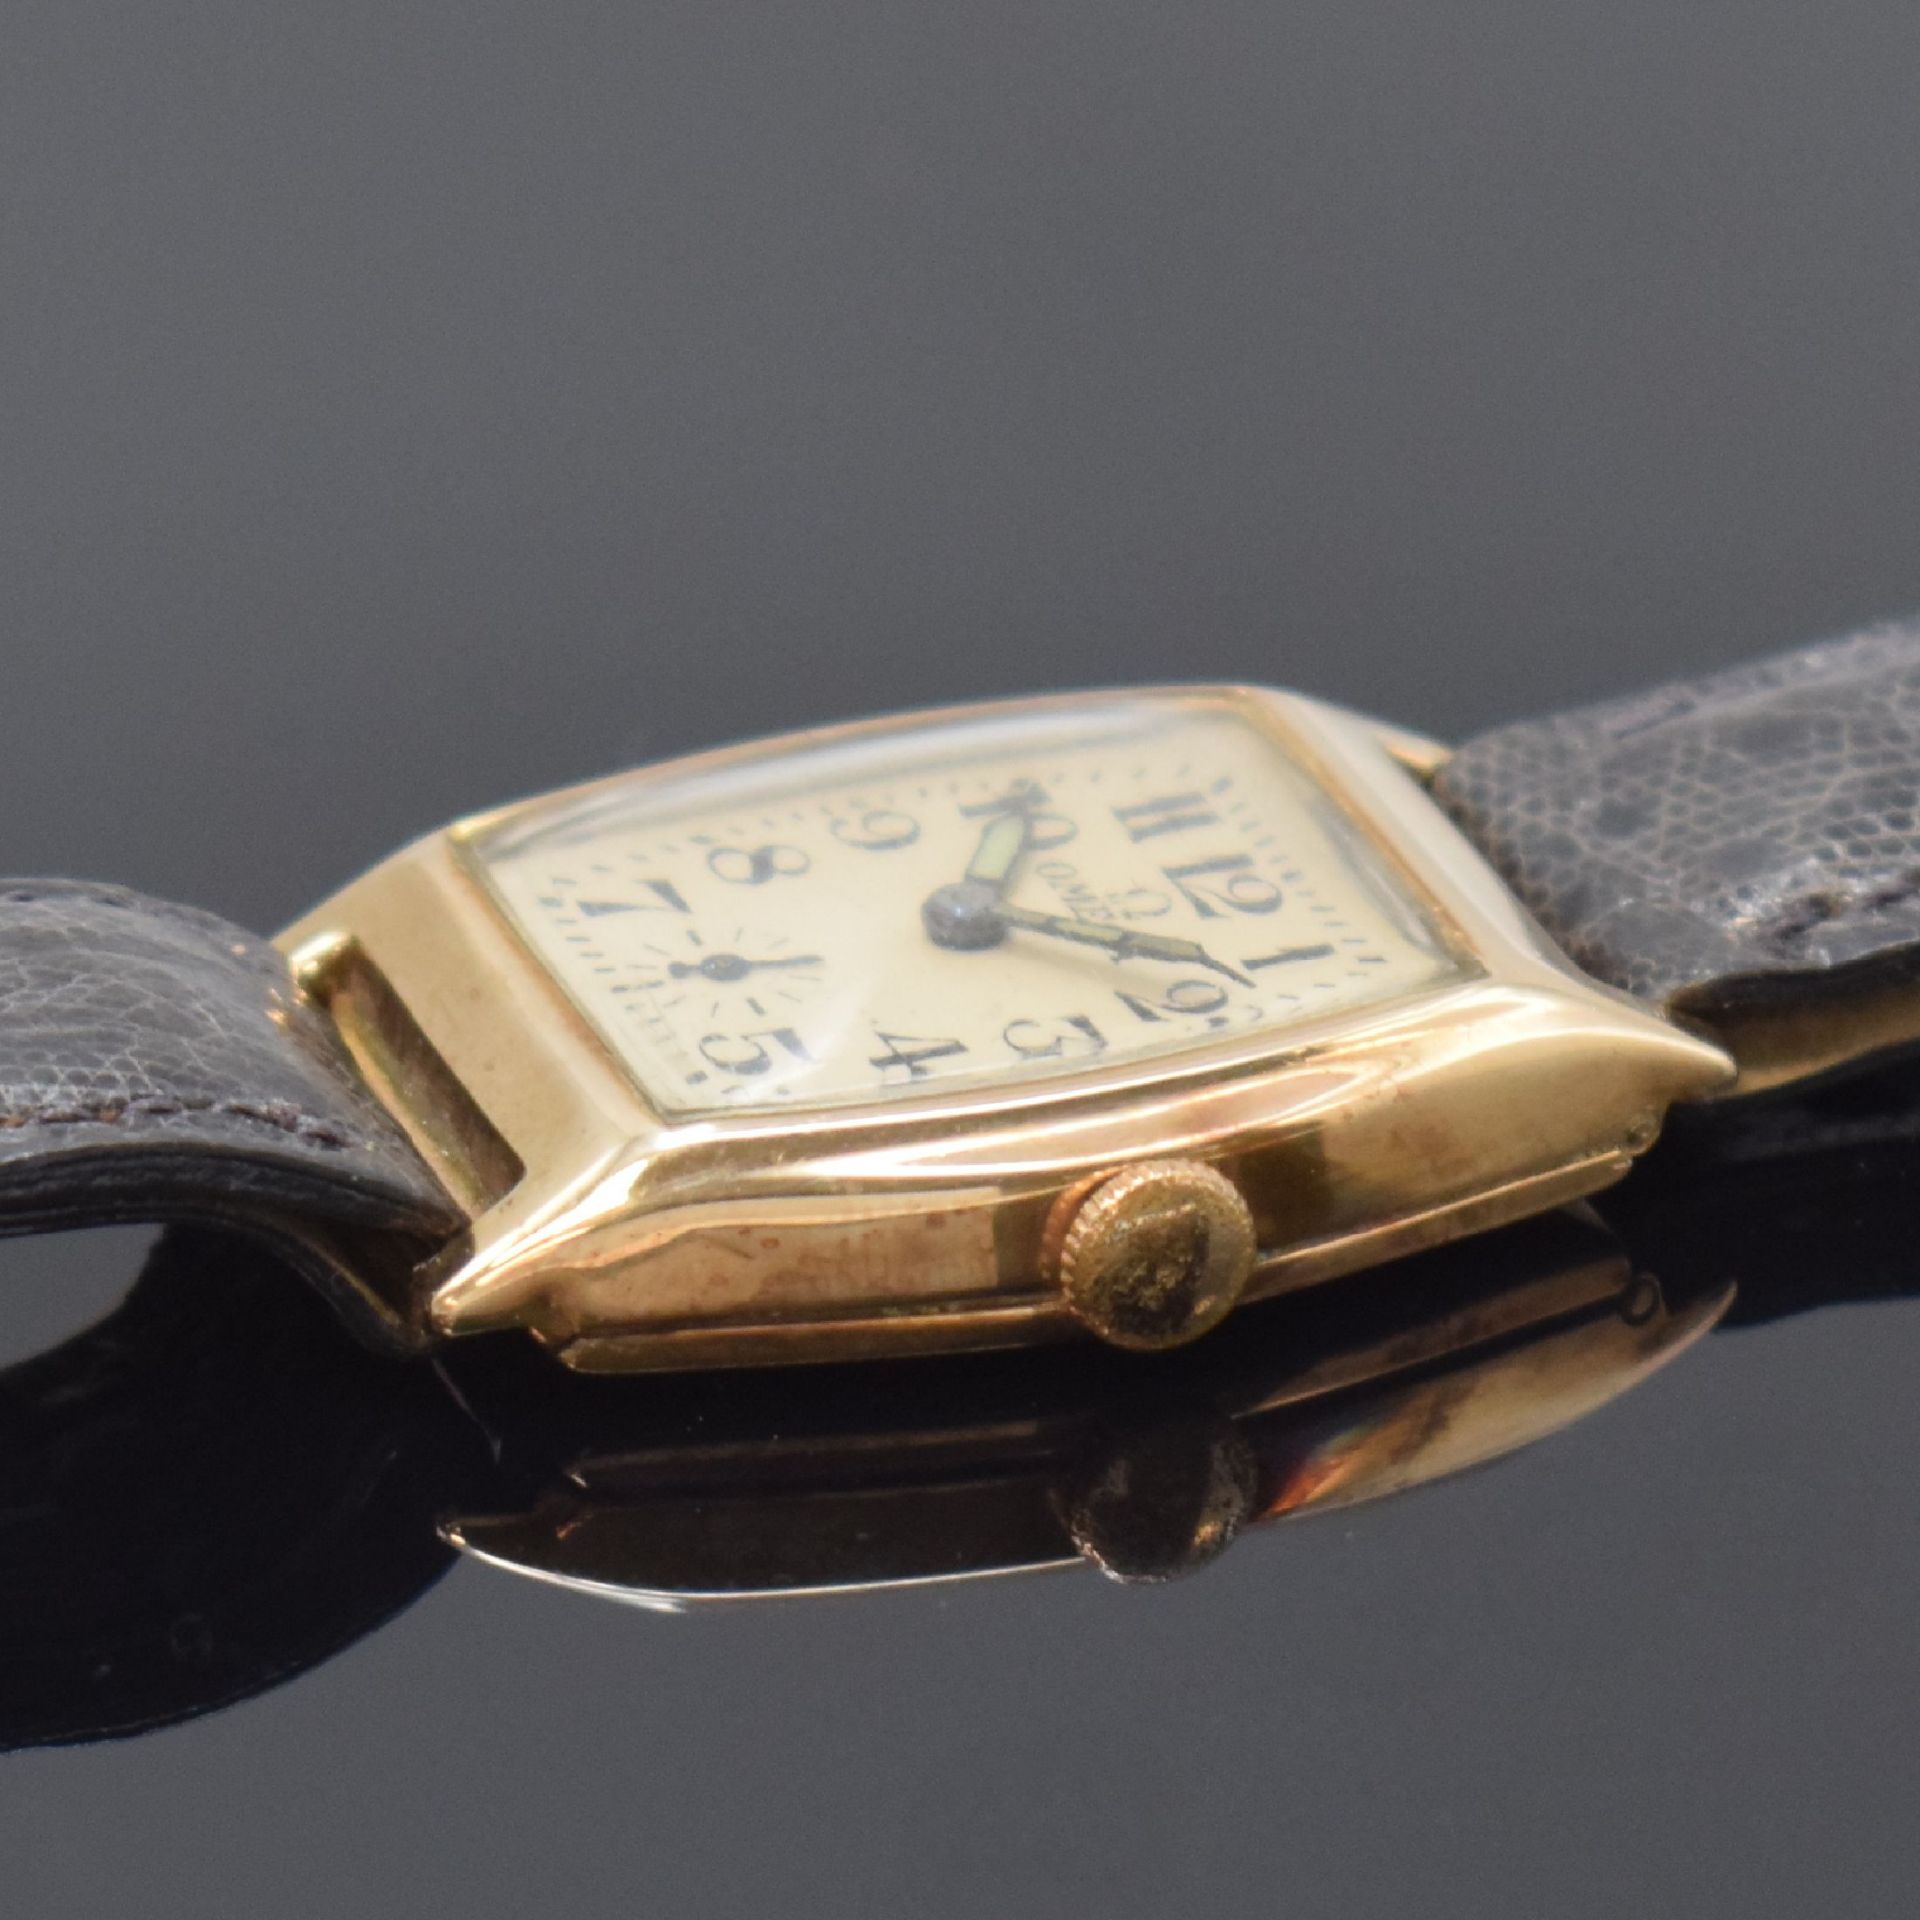 OMEGA Armbanduhr in Rotgold 9k, Schweiz / USA um 1938, - Image 3 of 7